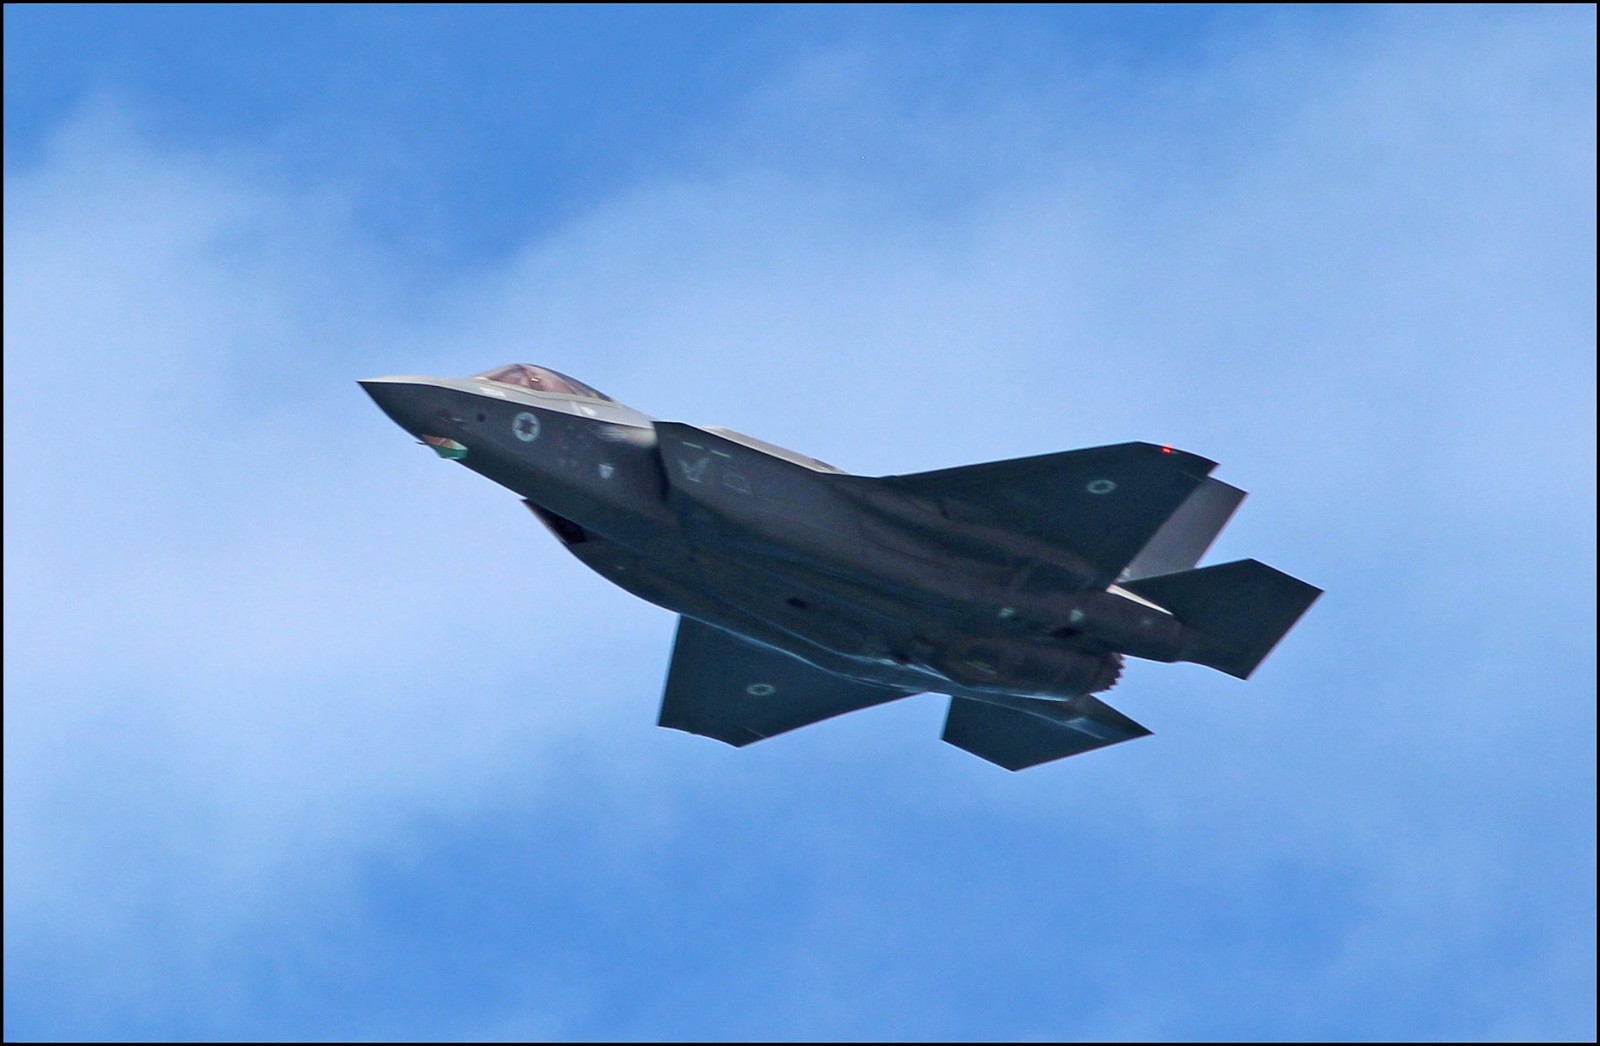 Jak ulepszono izraelskie myśliwce F-35? Teraz mogą latać nawet z tonową bombą